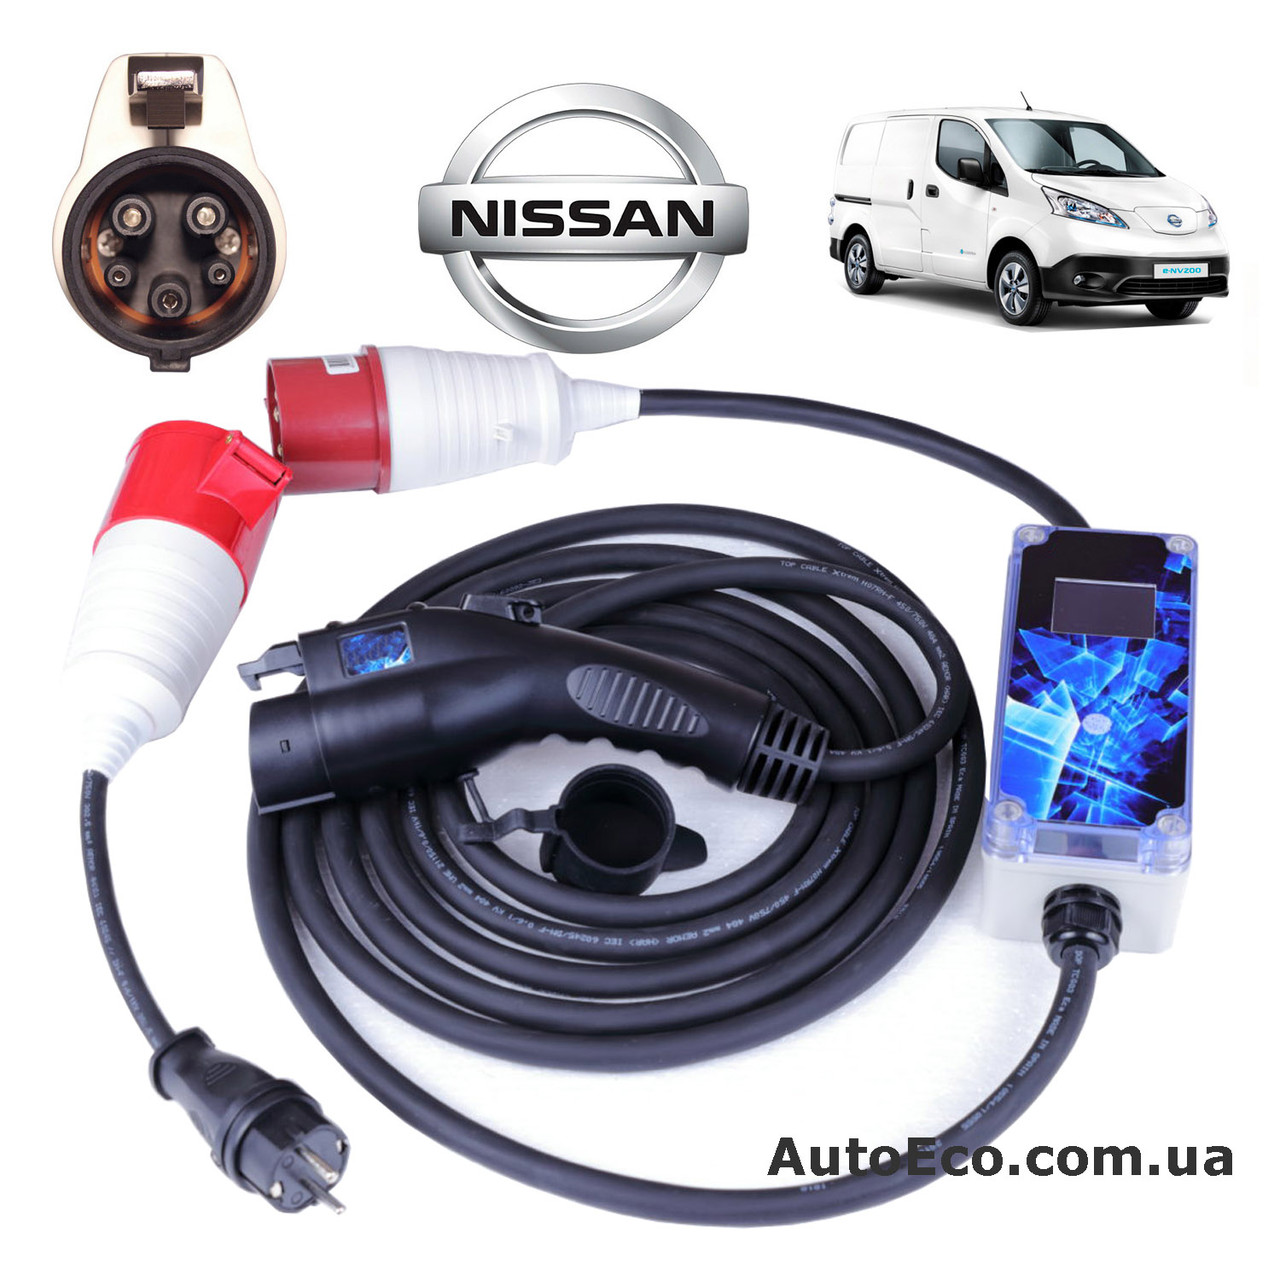 Зарядний пристрій для електромобіля Nissan NV200 SE Van AutoEco J1772-32A-Wi-Fi, фото 1